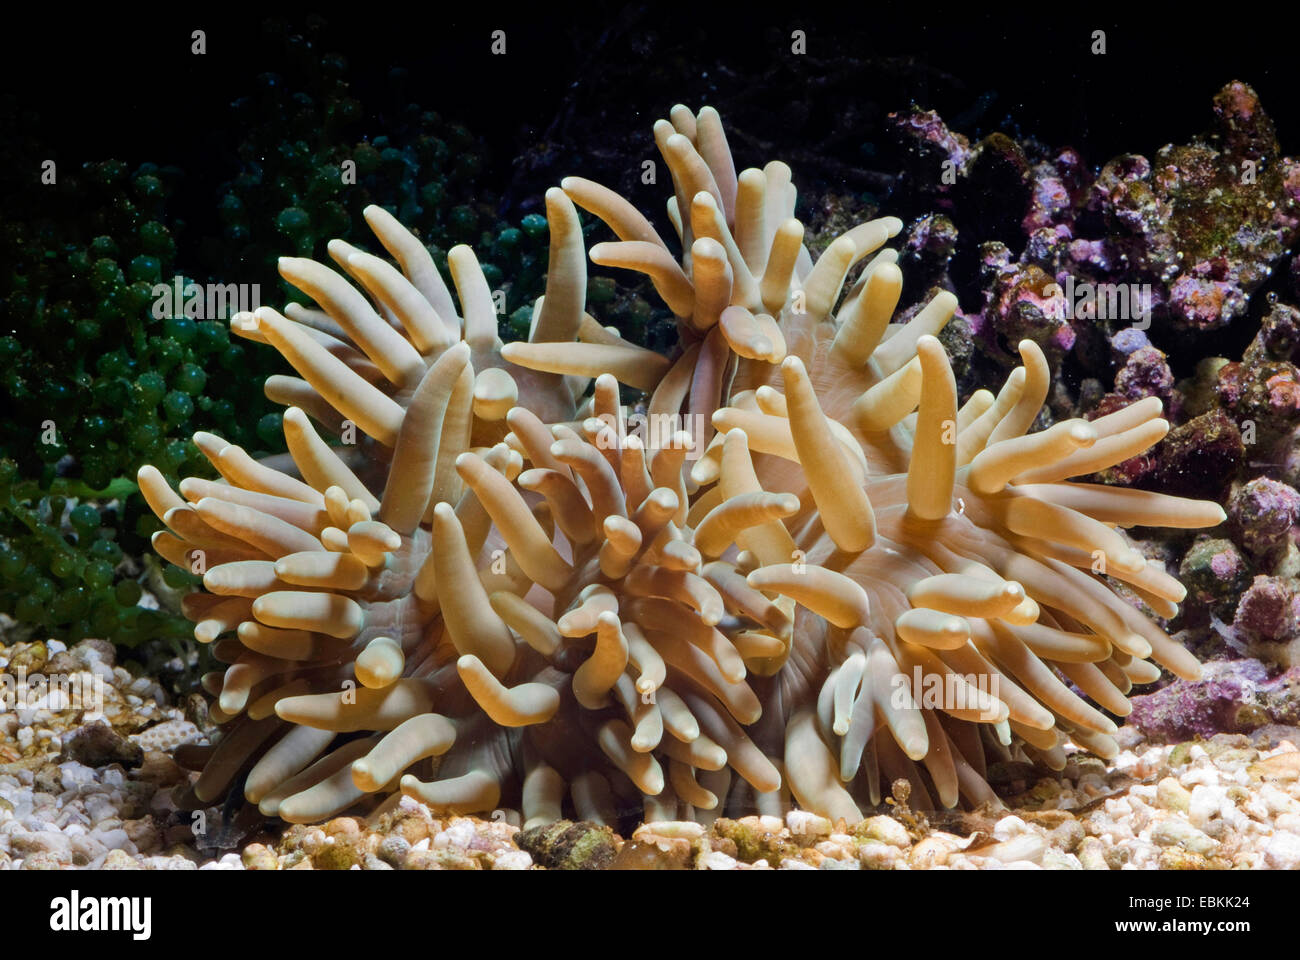 Leather anemone, Leathery sea anemone (Heteractis crispa), side view Stock Photo